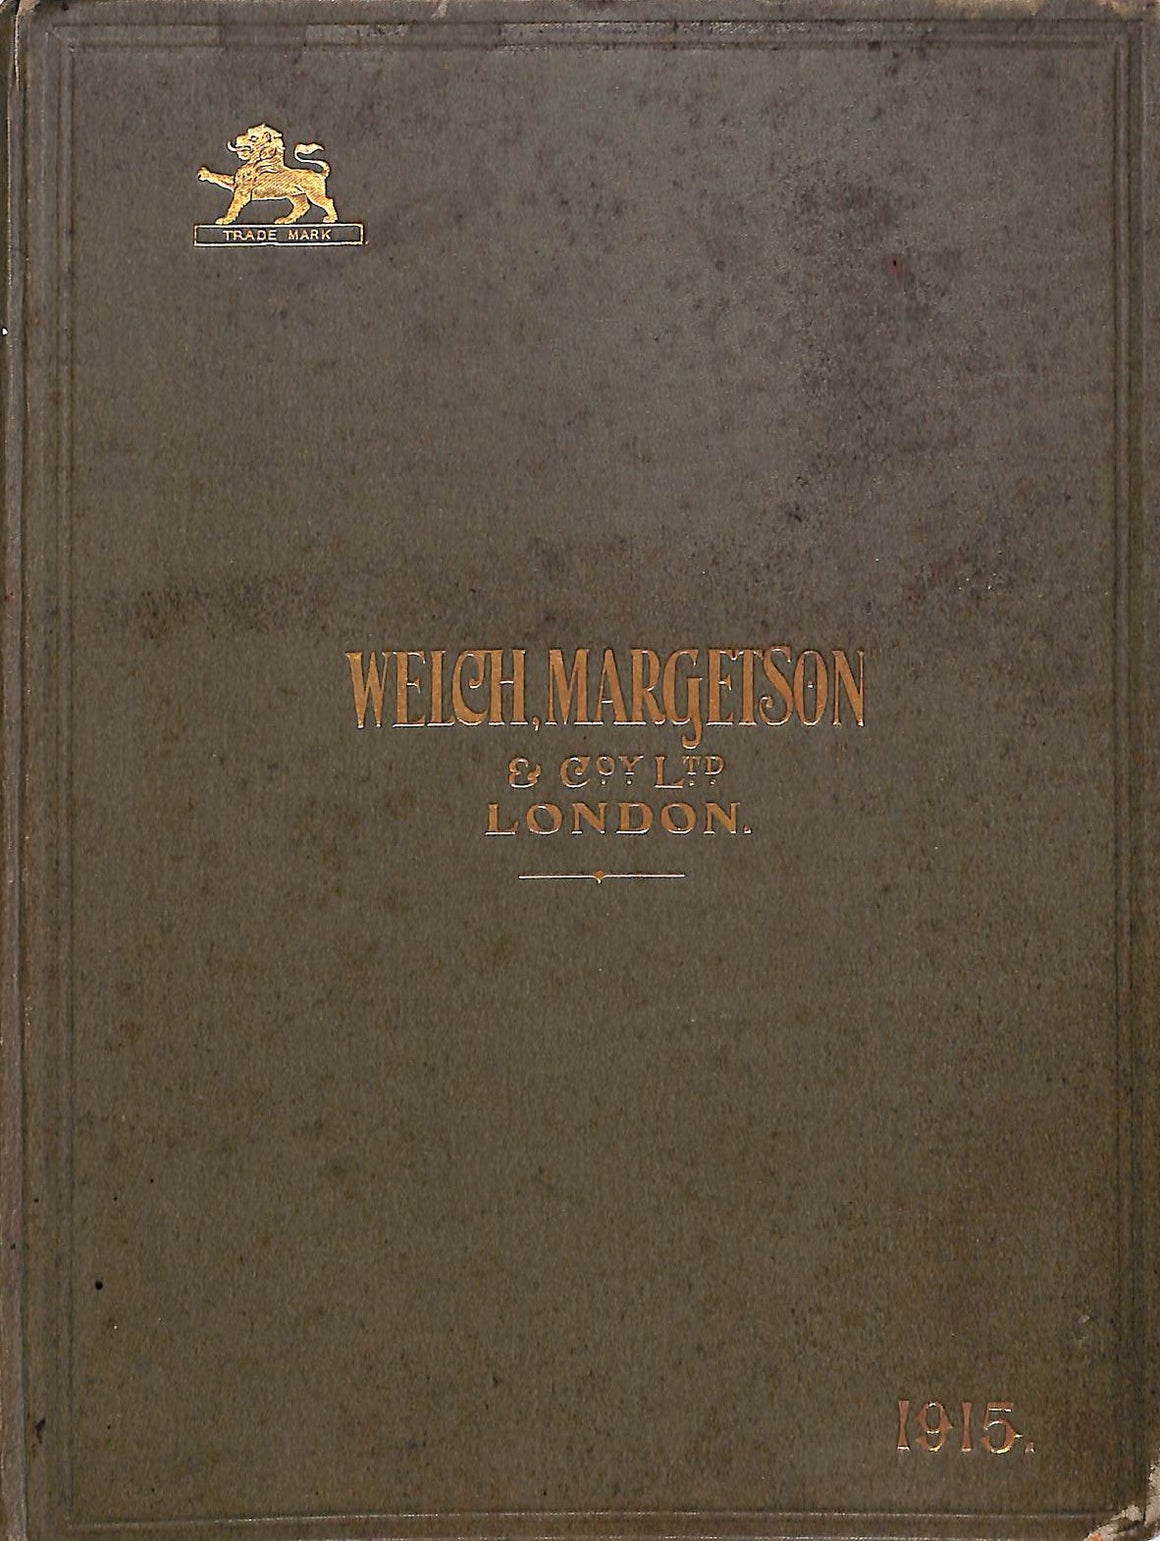 "Welch, Margetson & Co Ltd London 1915"